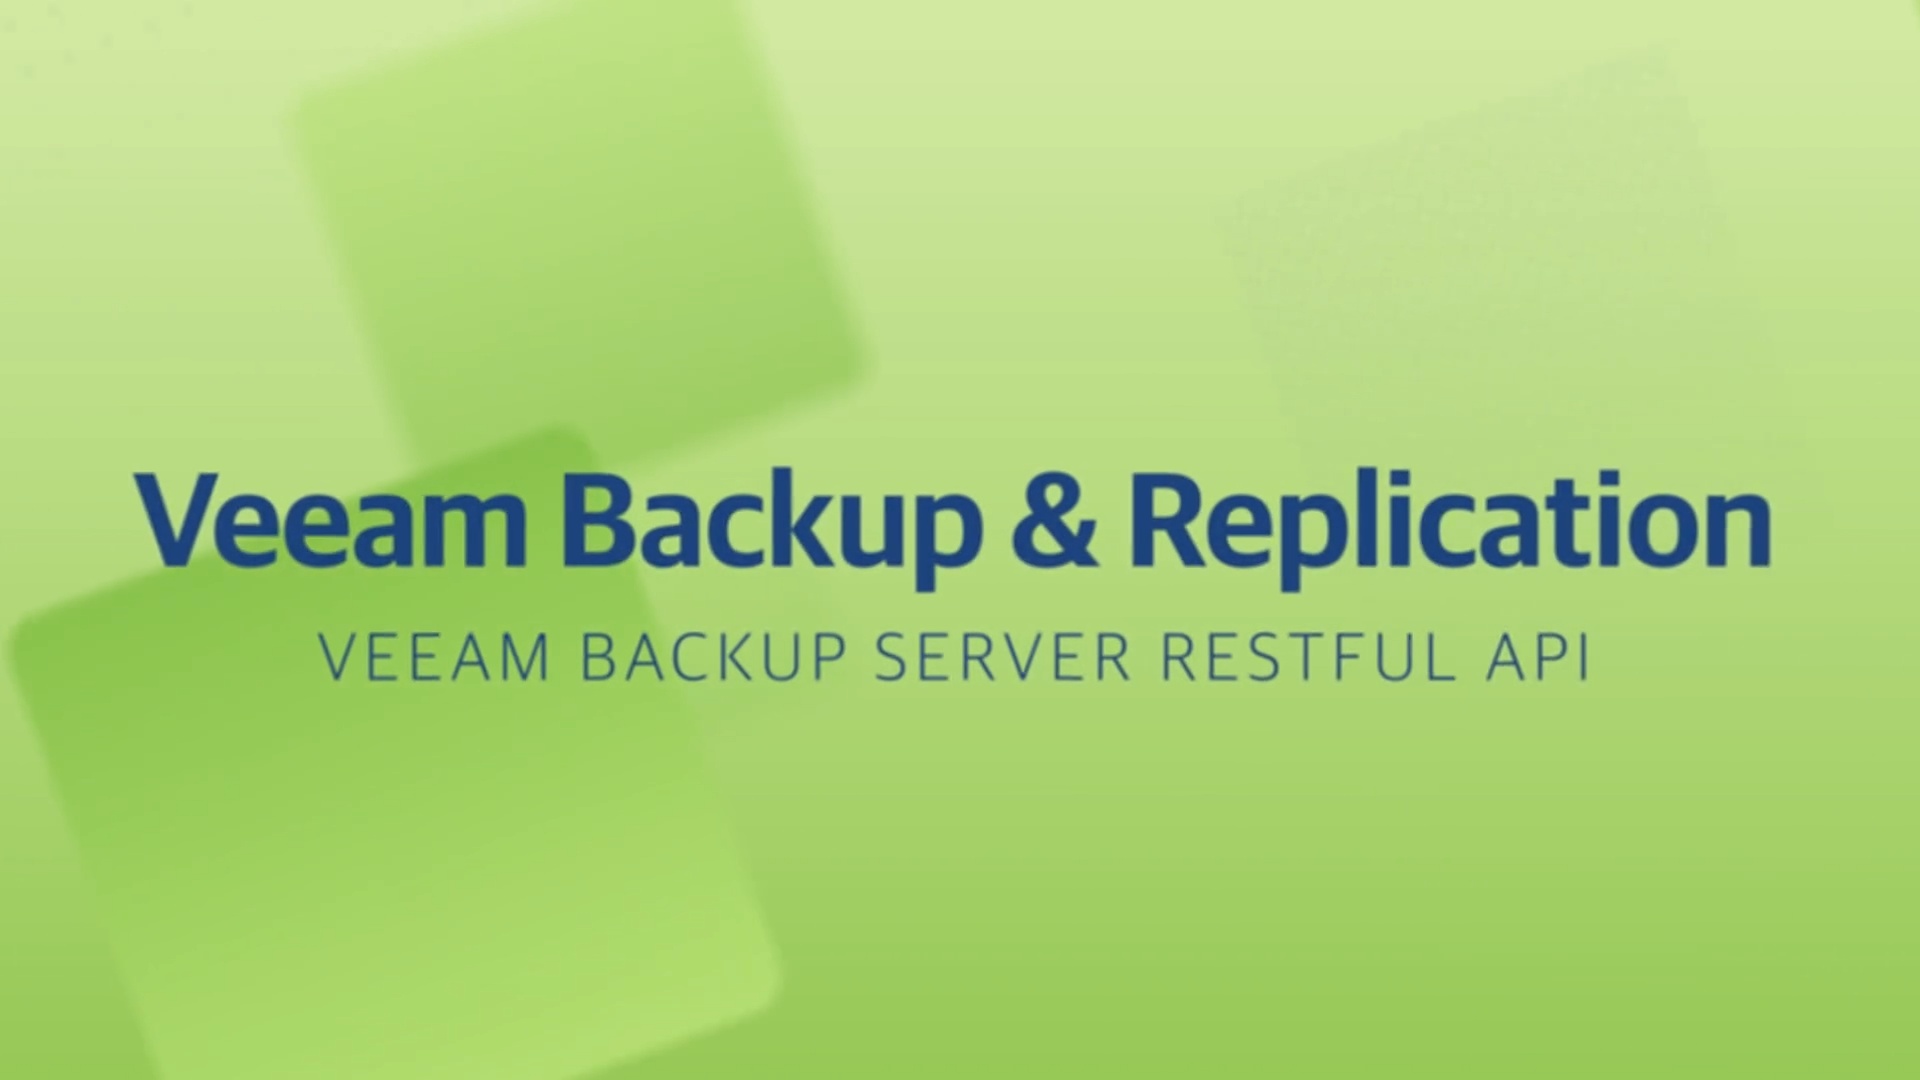 Product launch v11 - VBR - Veeam Backup Server Restful API